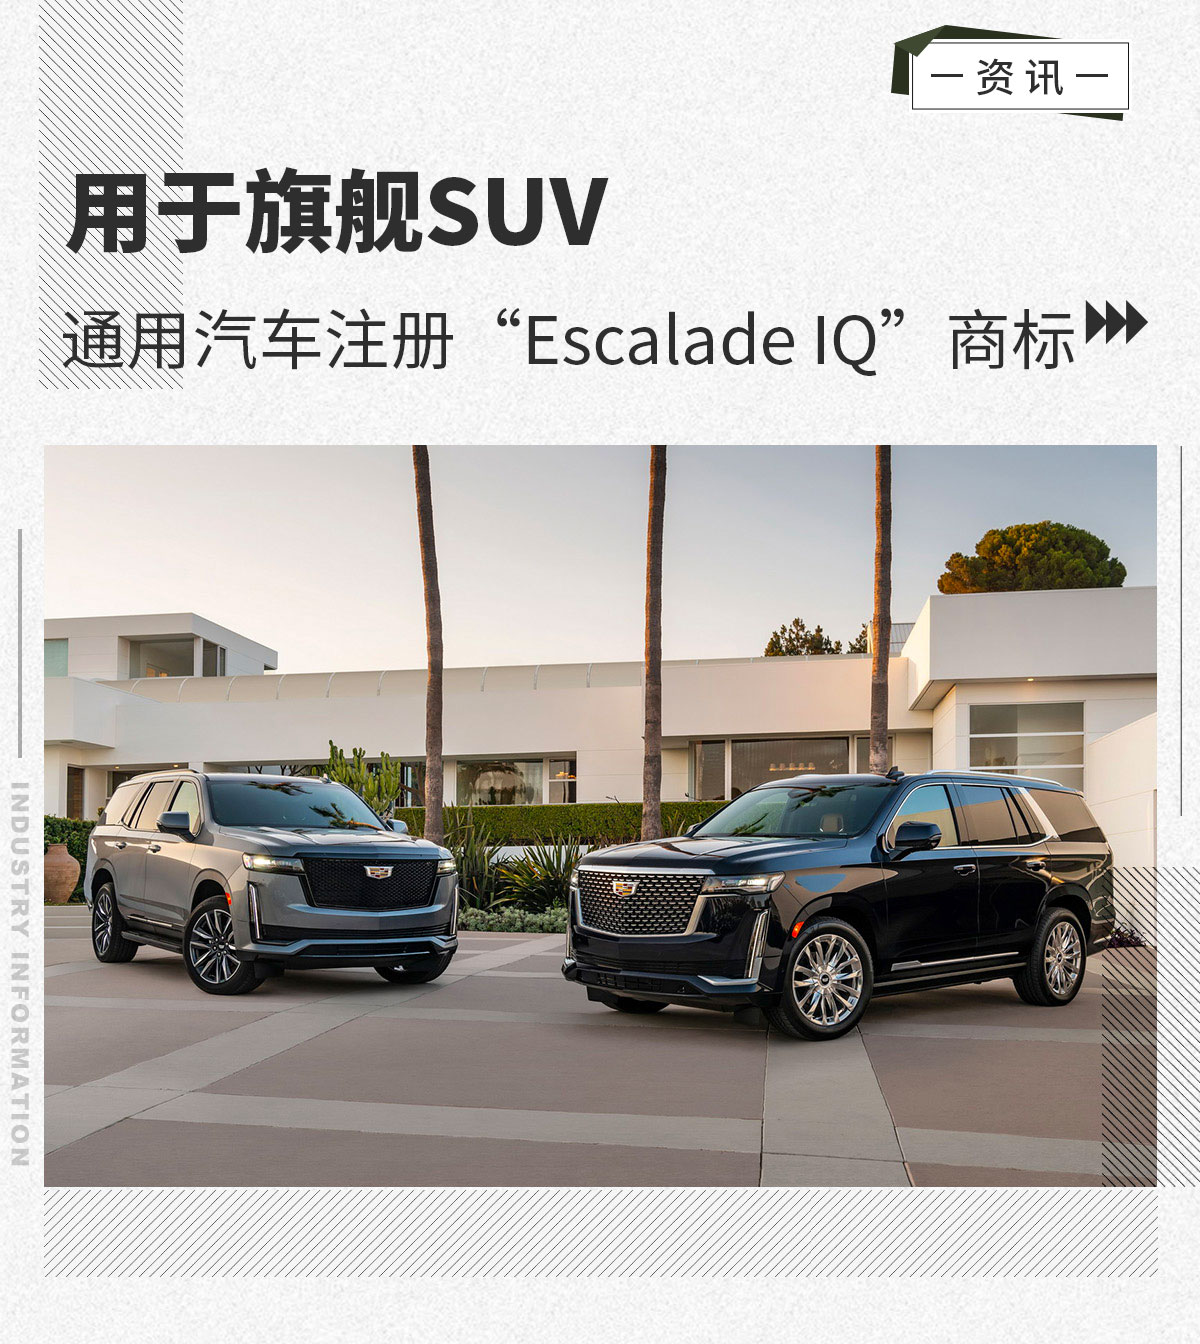 用于旗舰SUV 通用汽车注册“Escalade IQ”商标